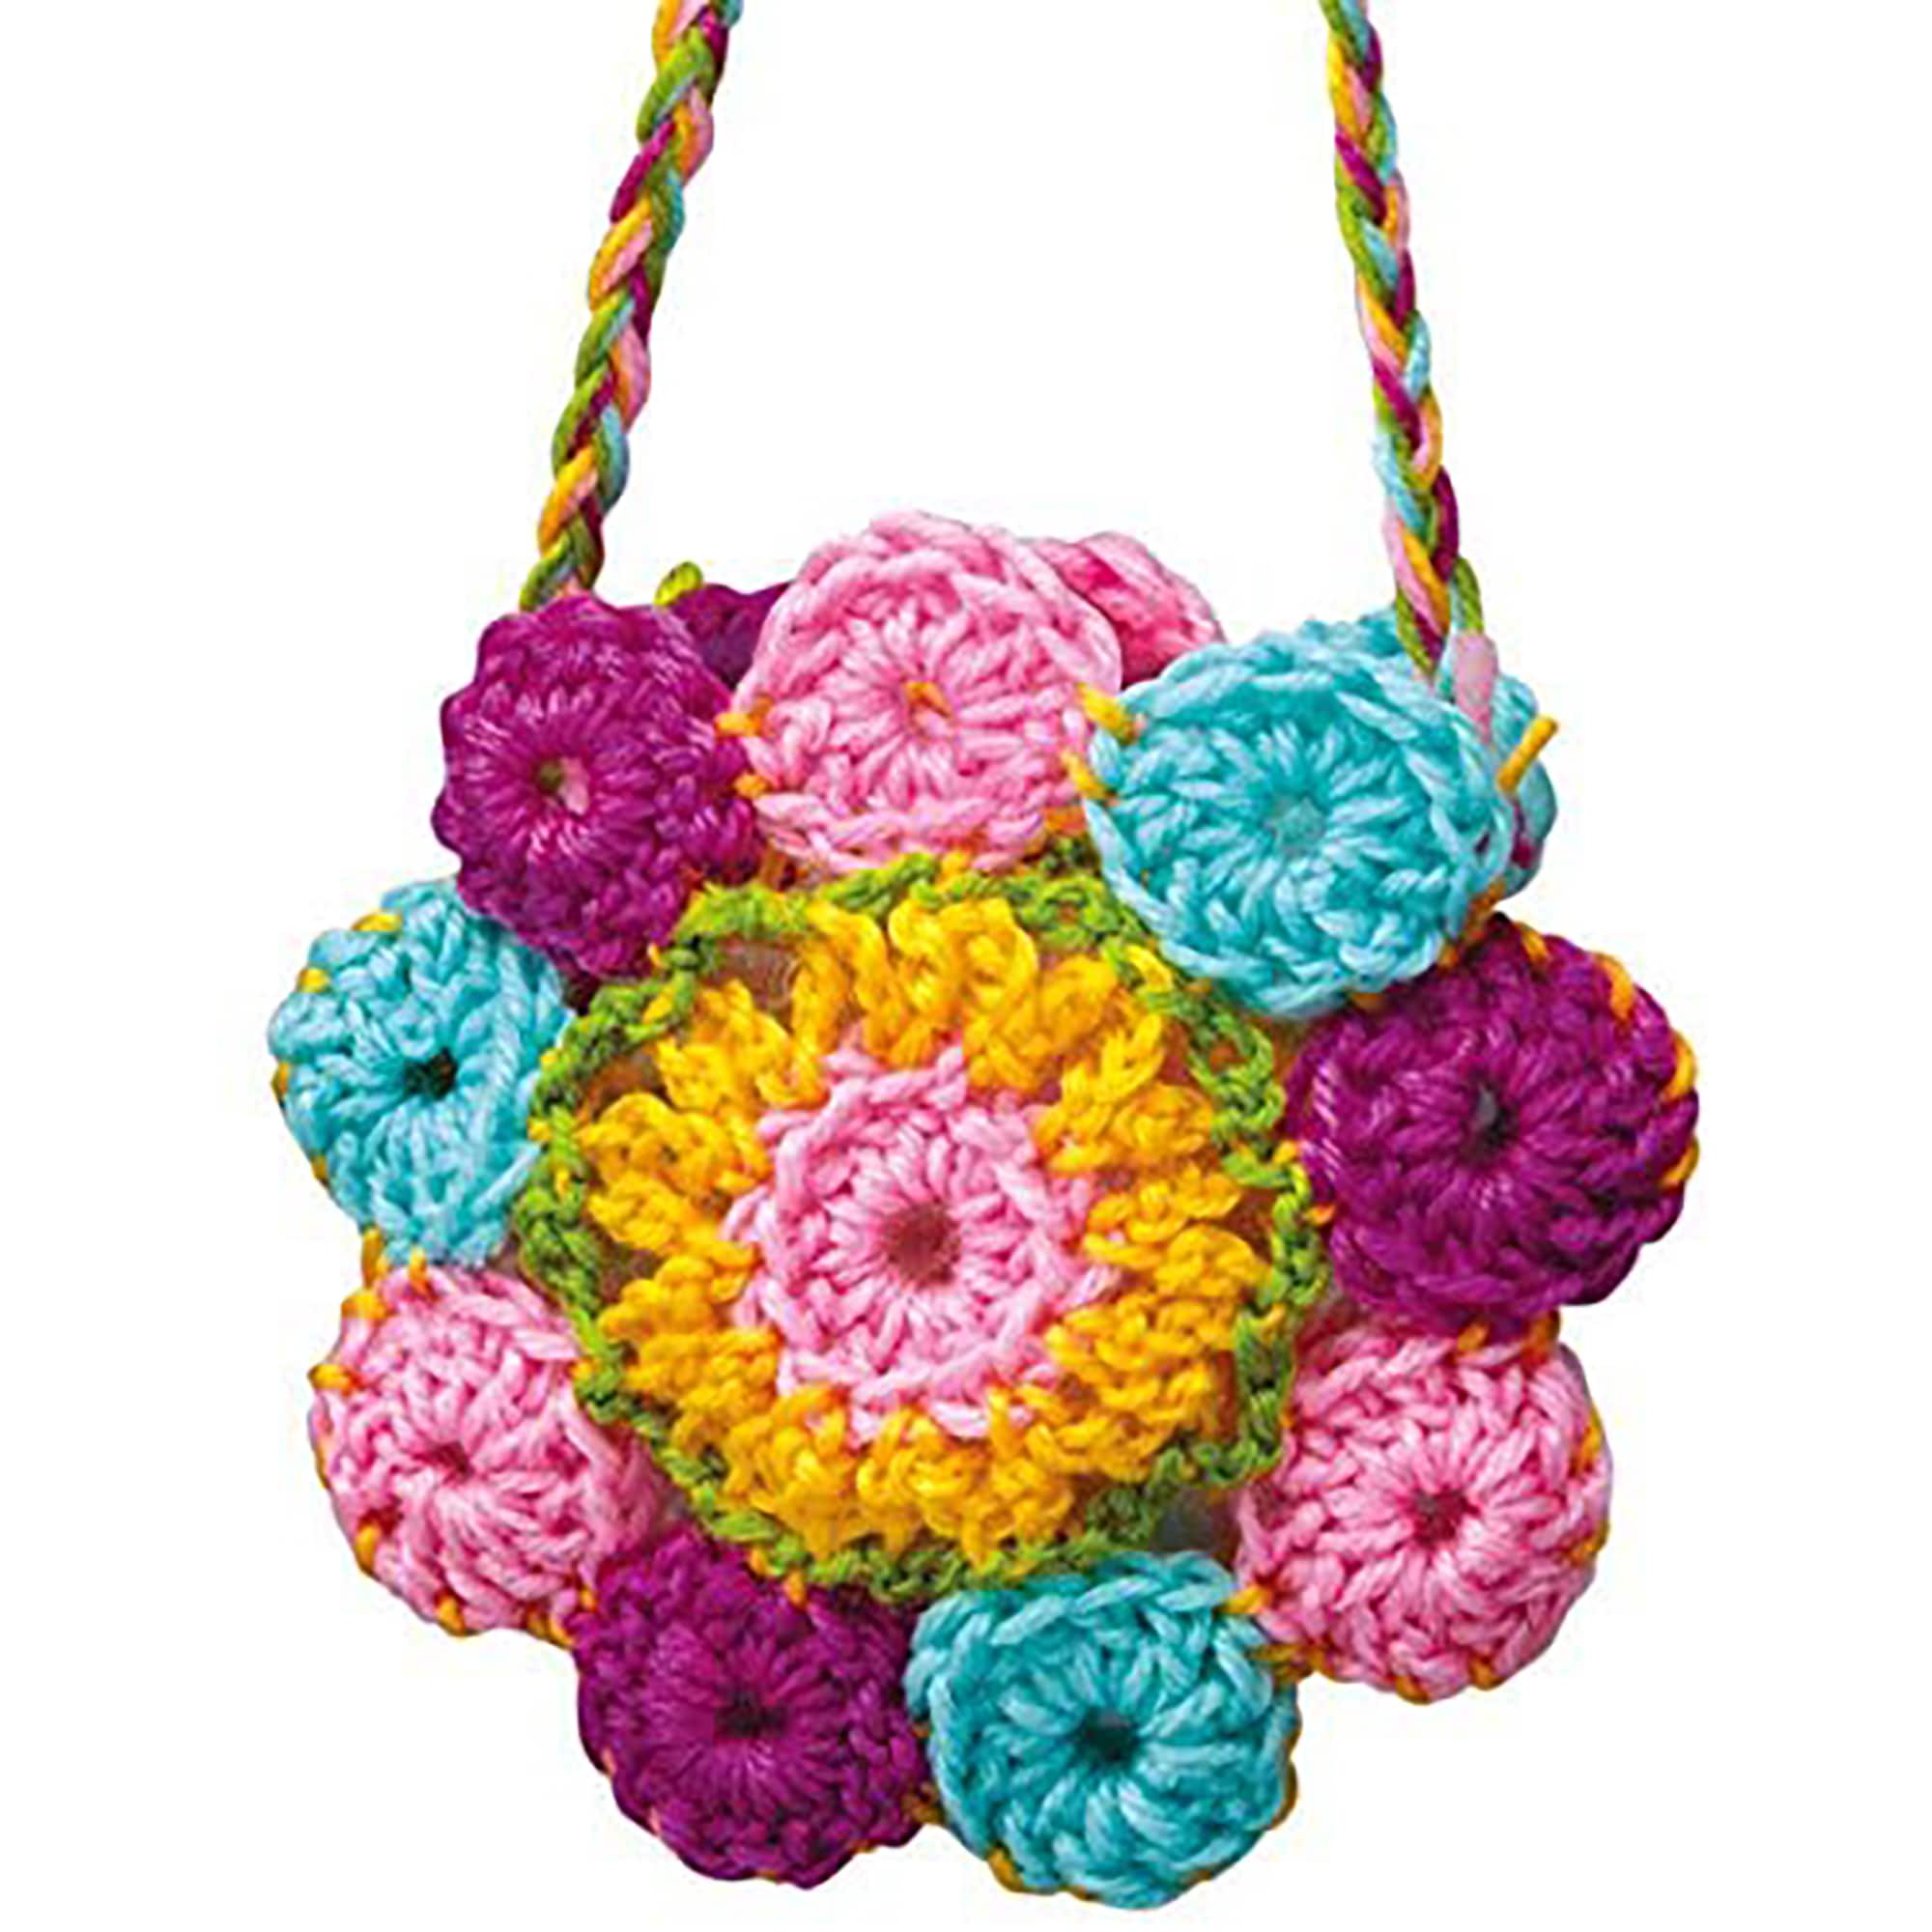 4M Beginner Children's Crochet Kit, 10-Piece